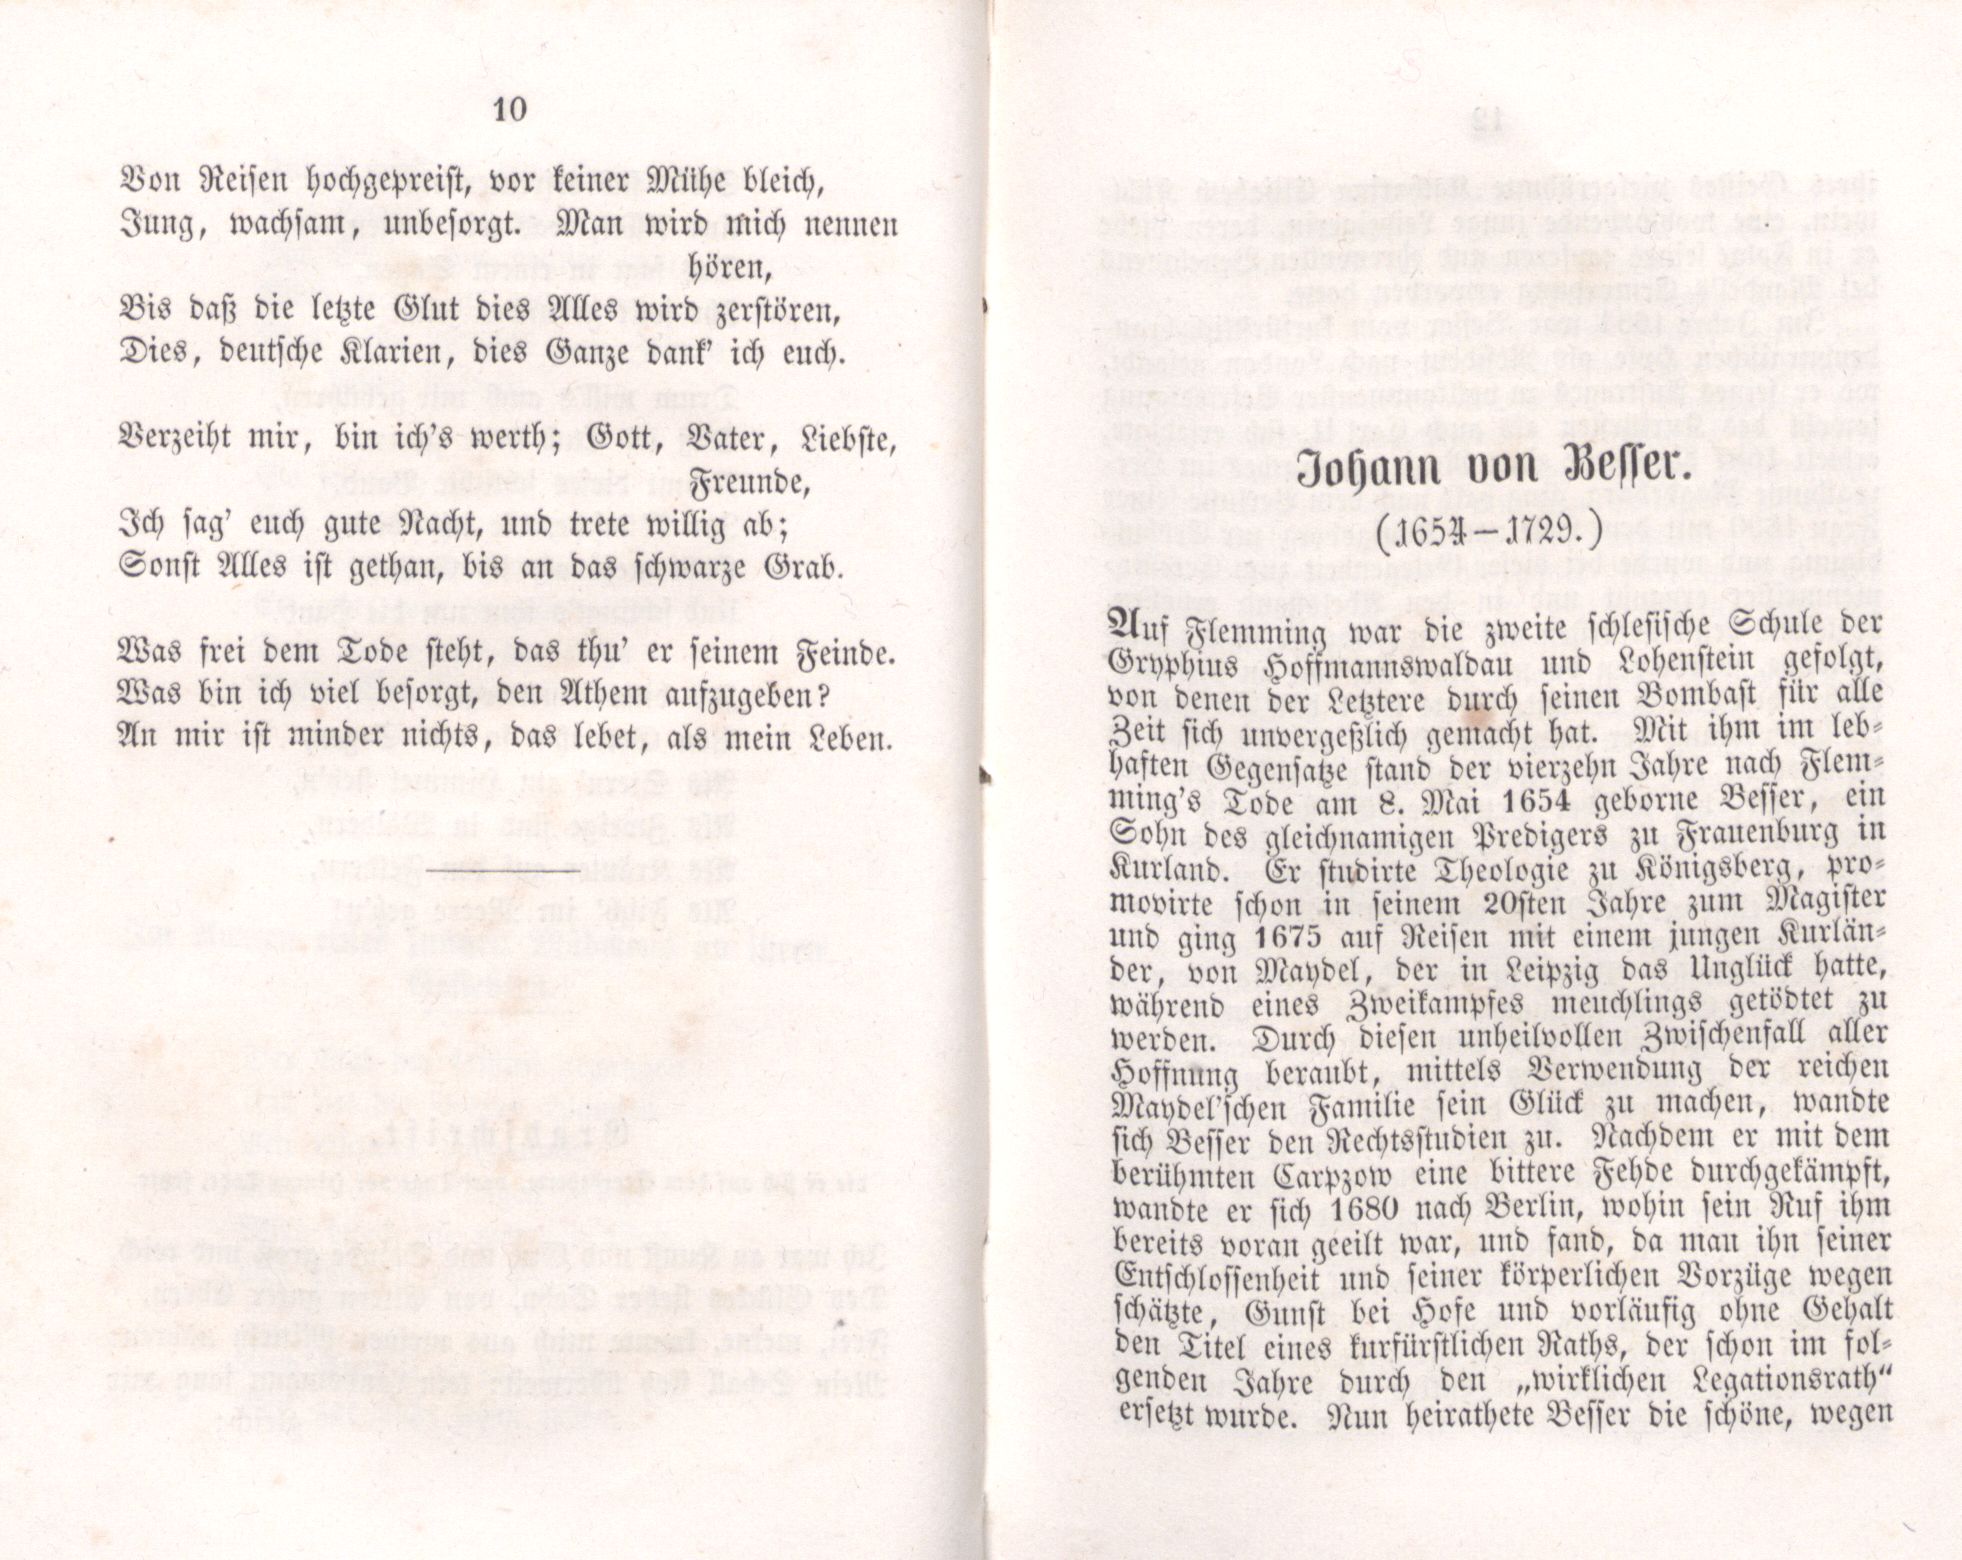 Johann von Besser (1855) | 1. (10-11) Main body of text